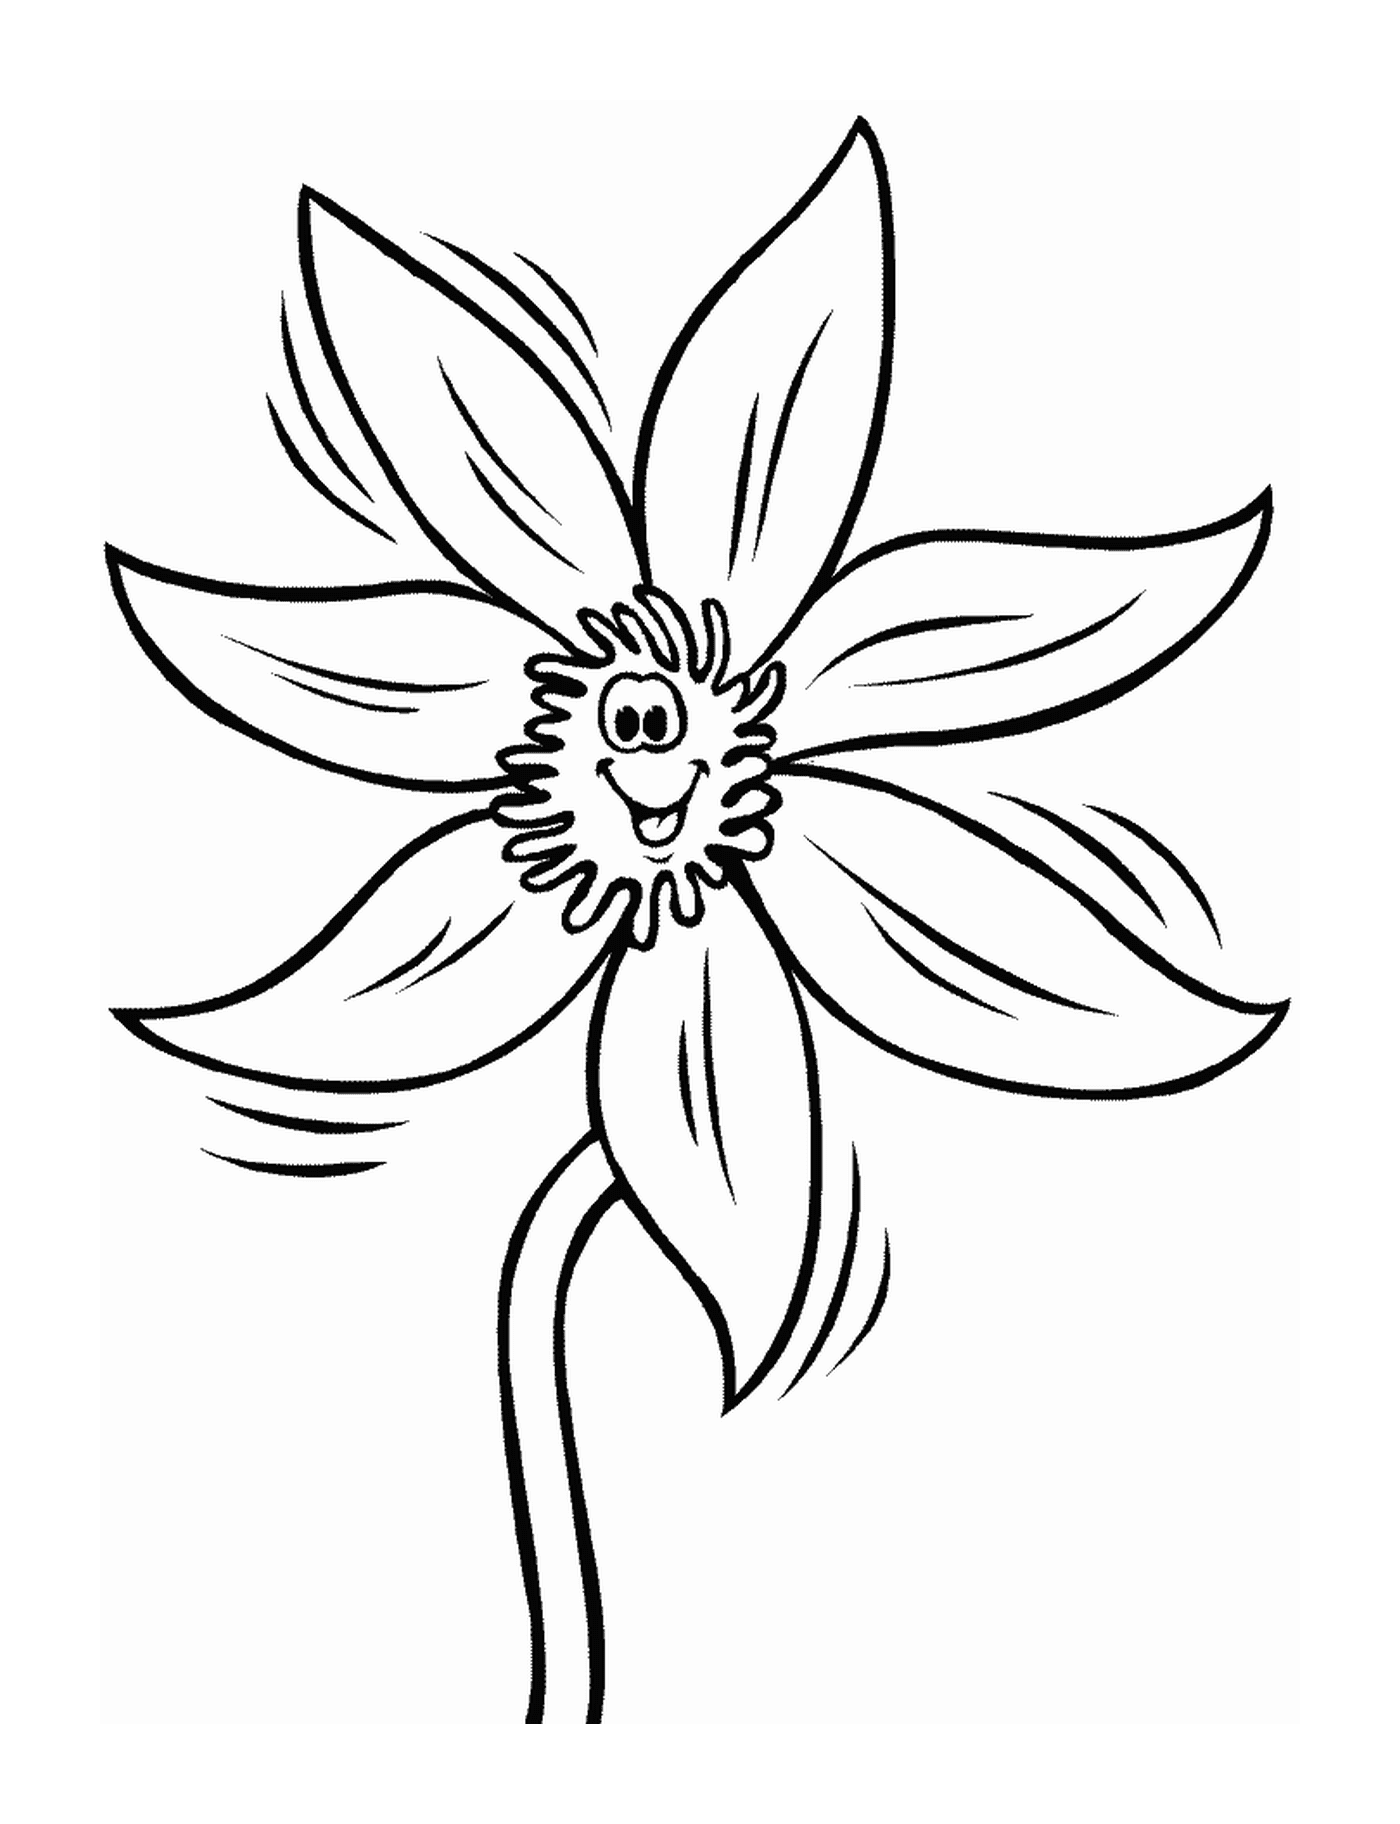  A flower 